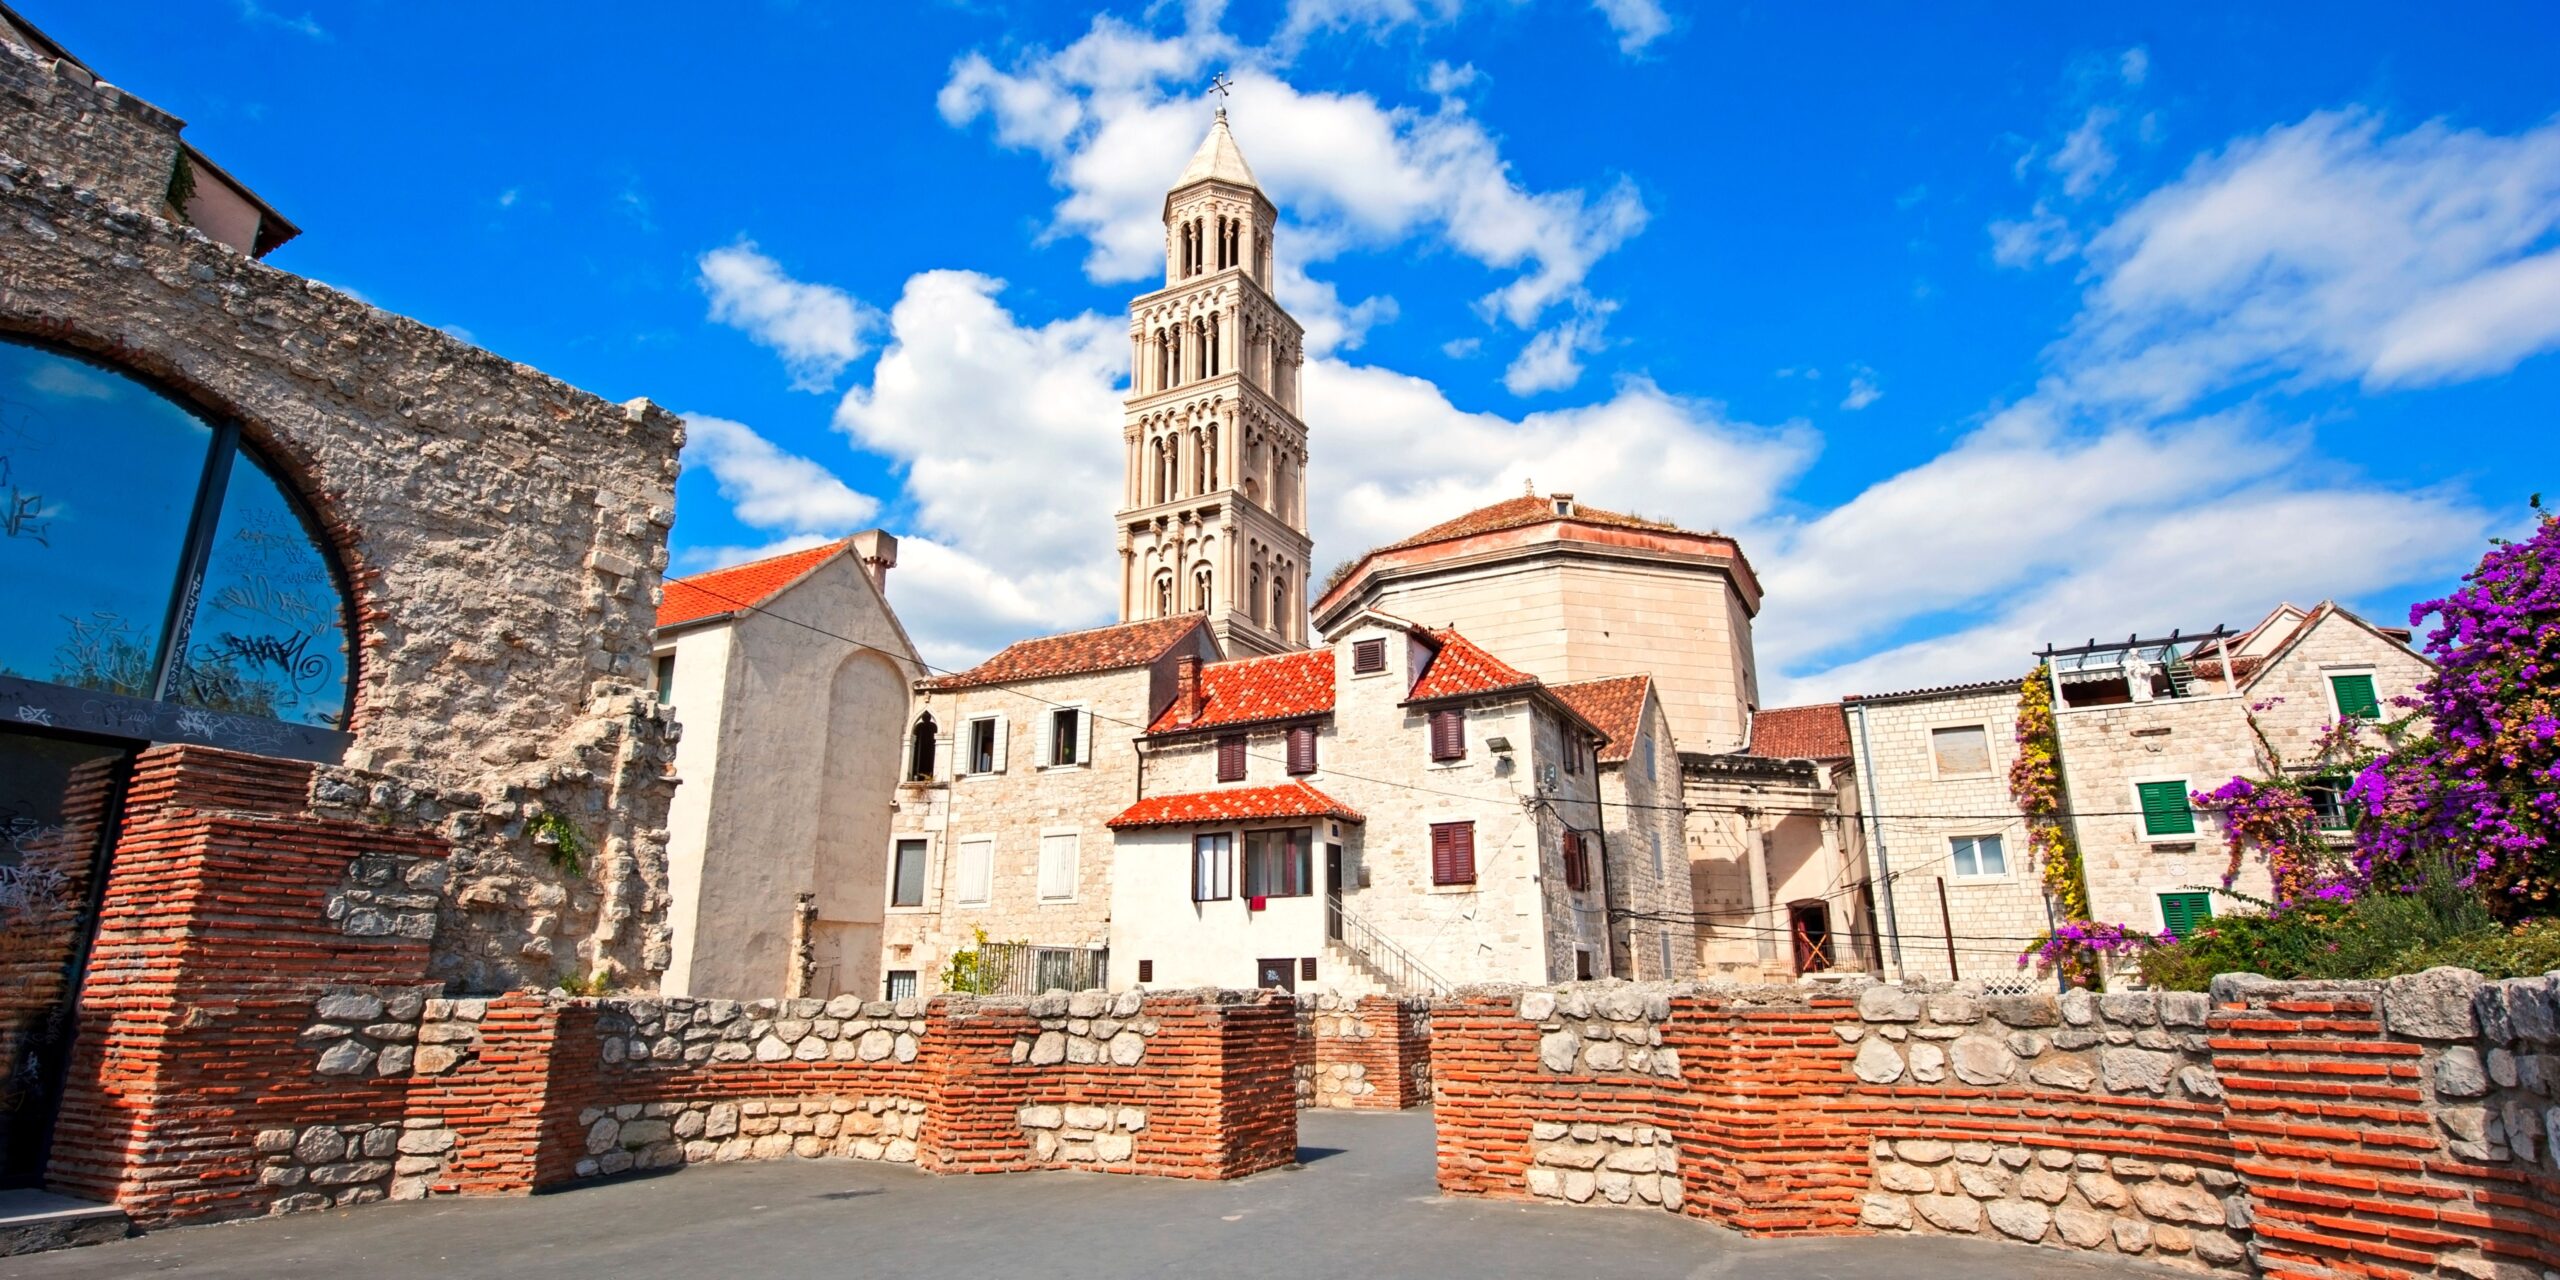 L'incontournable palais Dioclétien de la ville de Split en Croatie